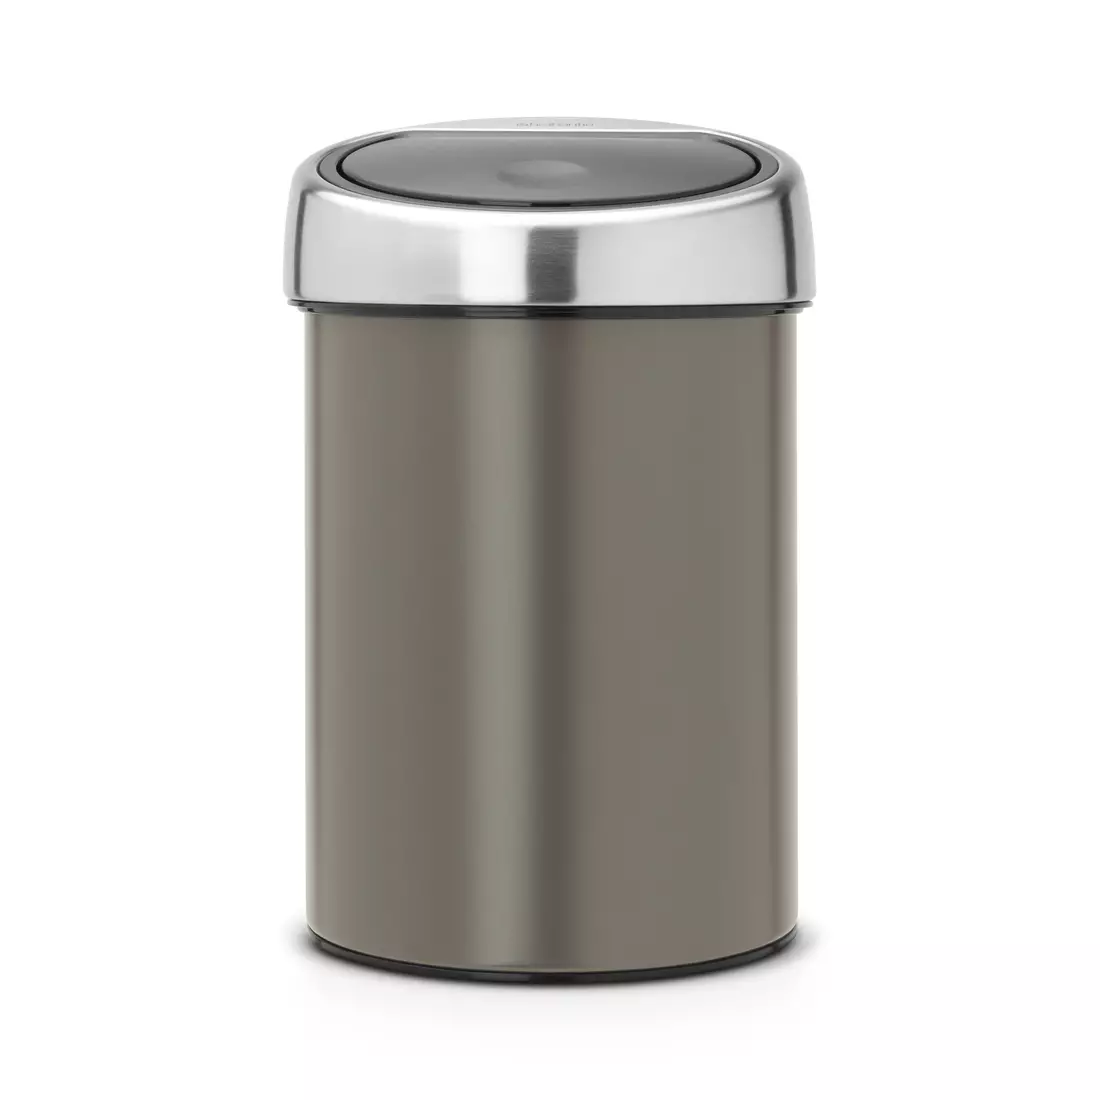 Bin wastebasket 3L, copper | MikeSPORT